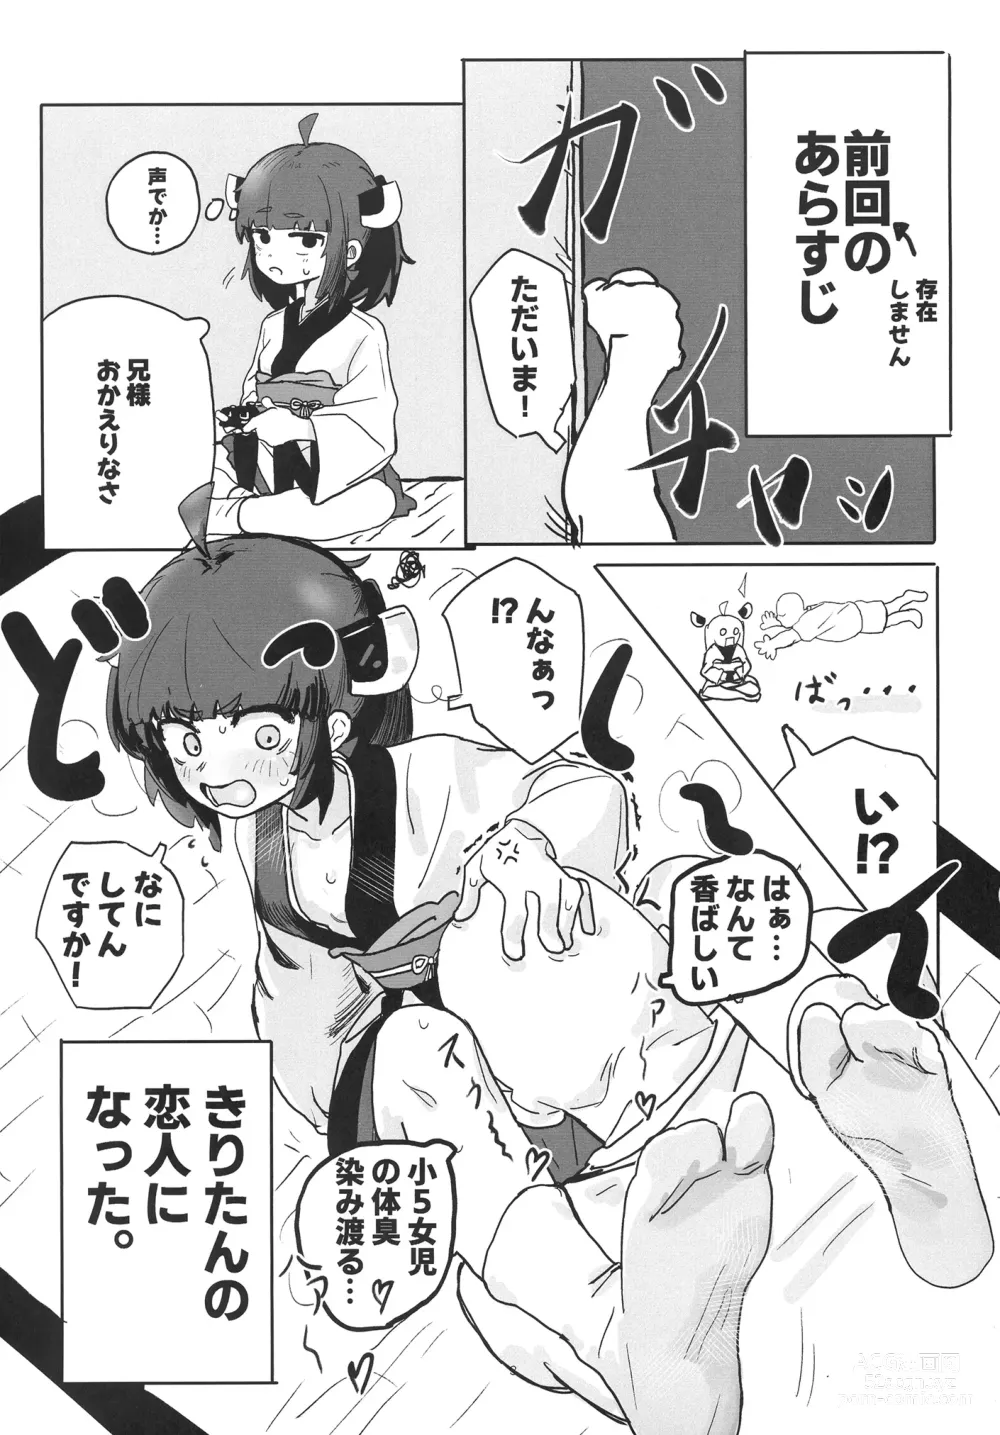 Page 3 of doujinshi Kiri tanto etchi shitai!